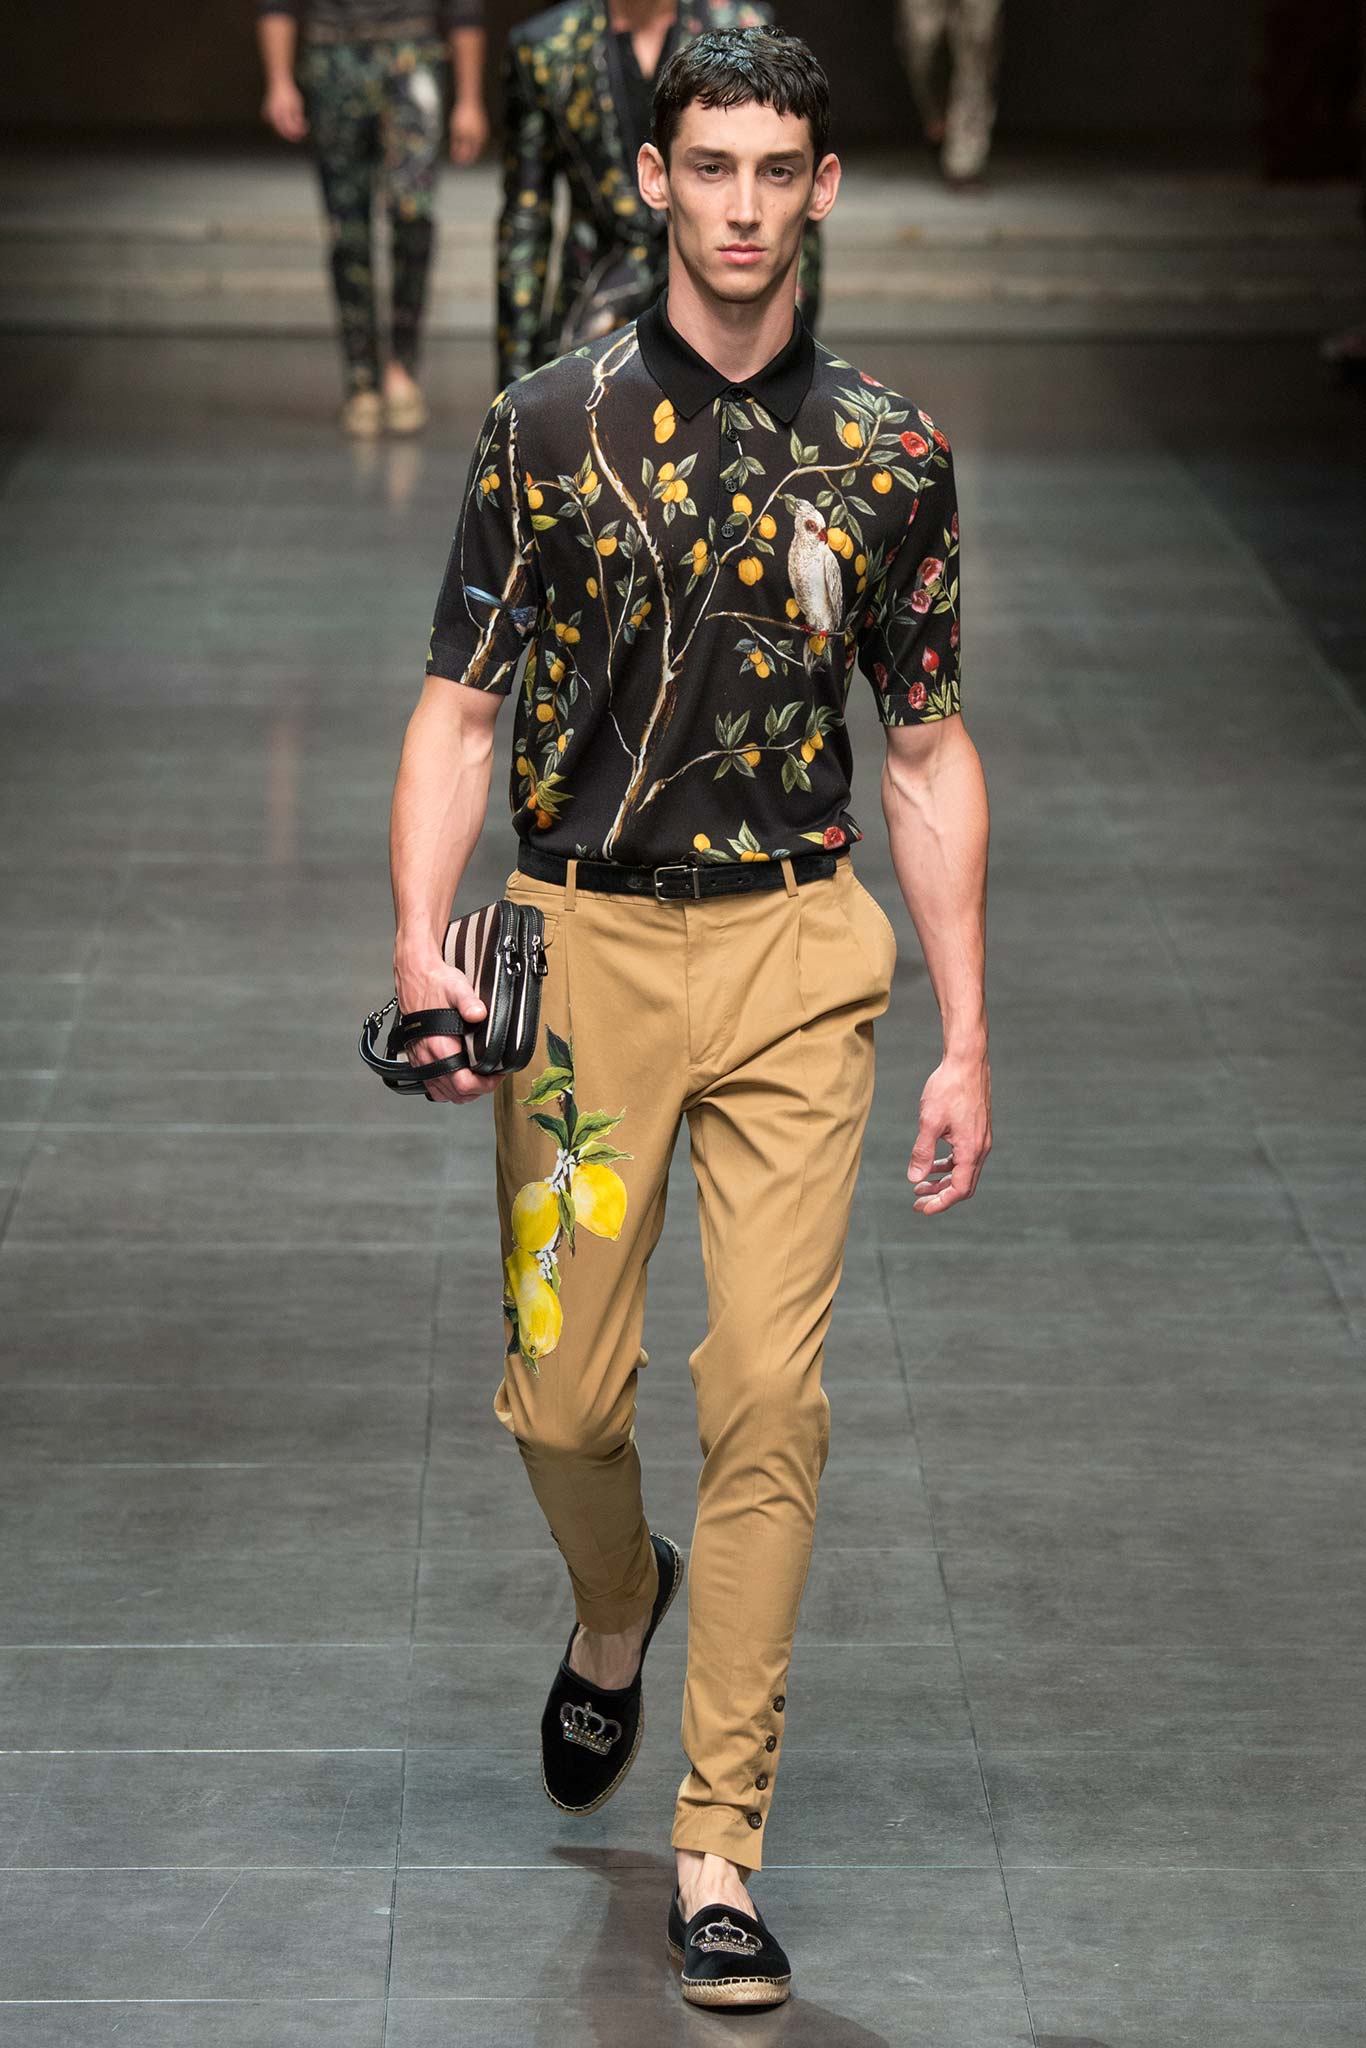 Мужская мода 2019 тенденции, оттенки и фасоны